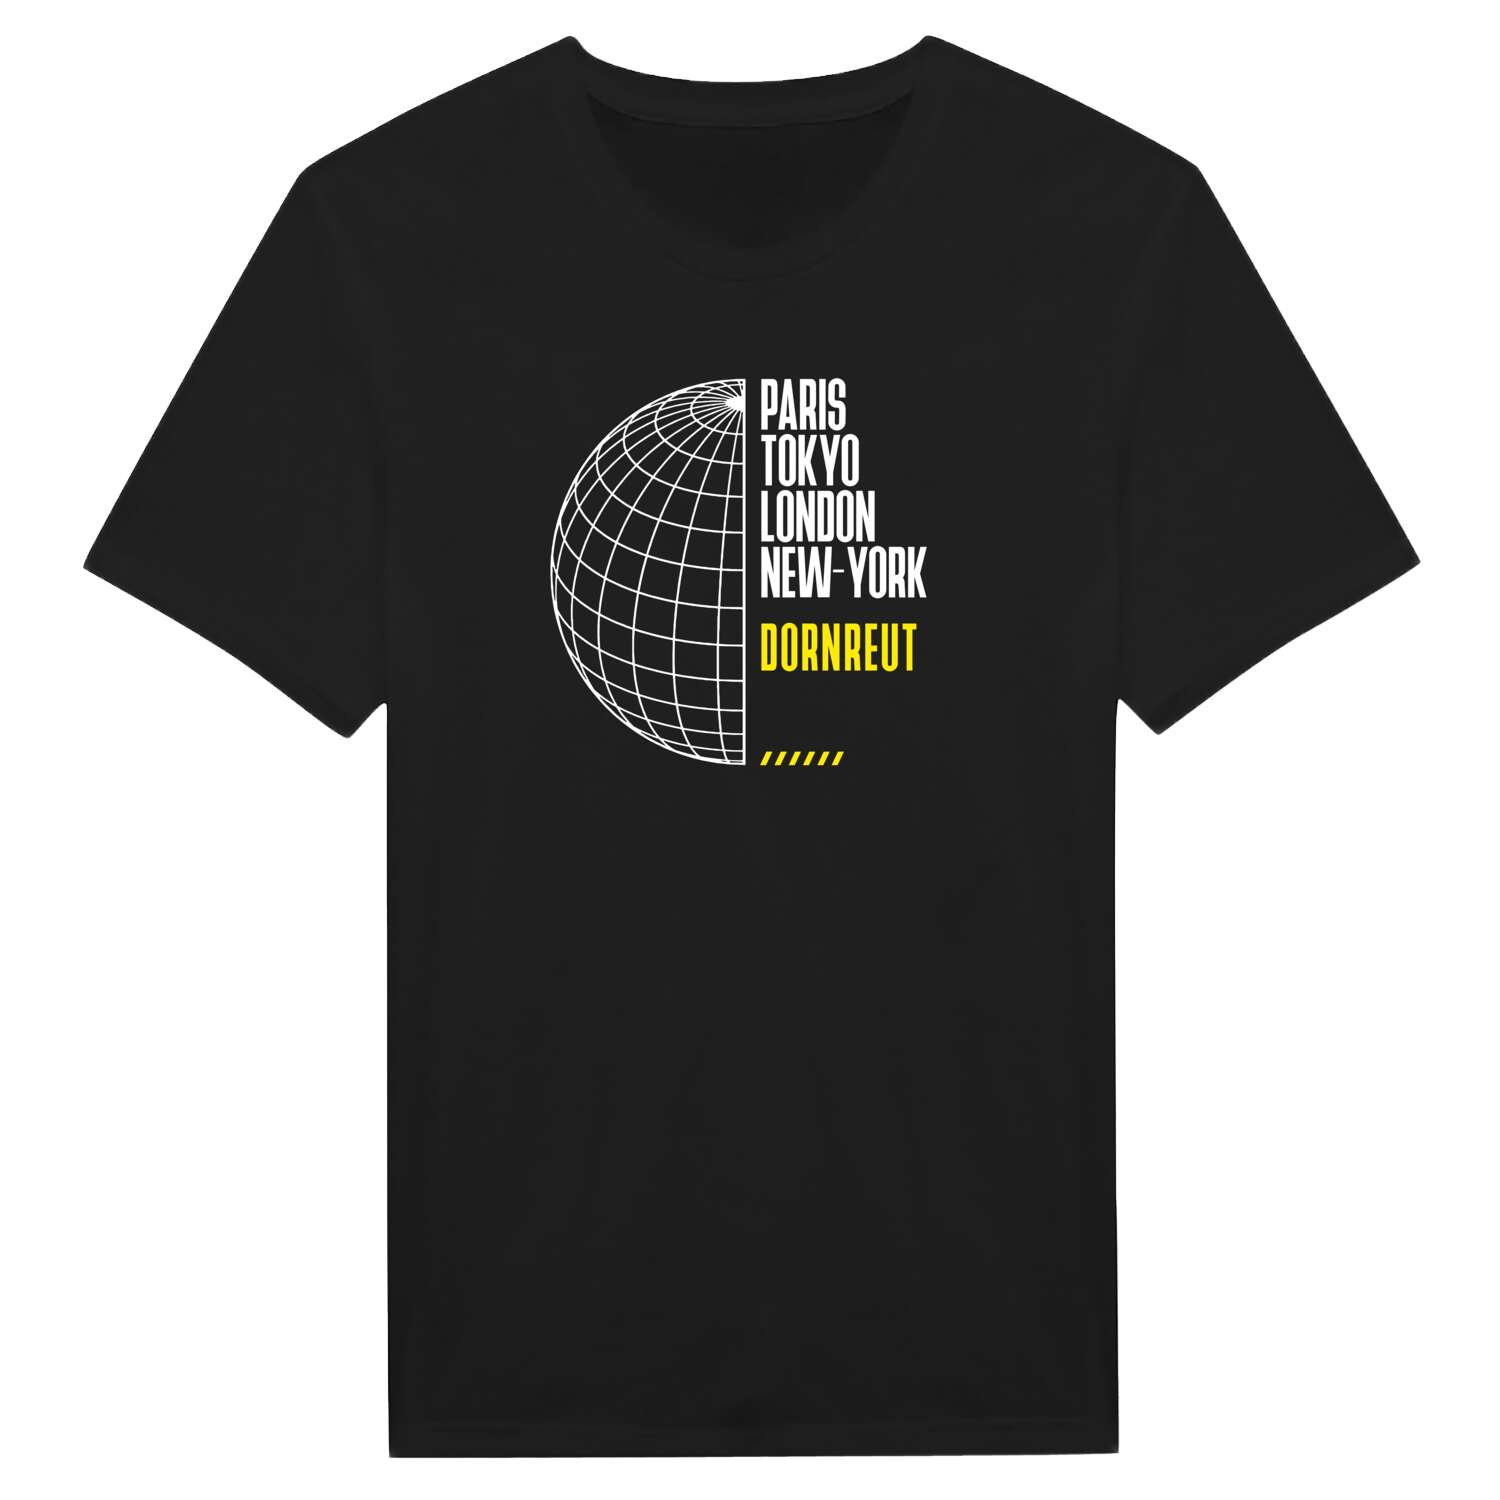 Dornreut T-Shirt »Paris Tokyo London«